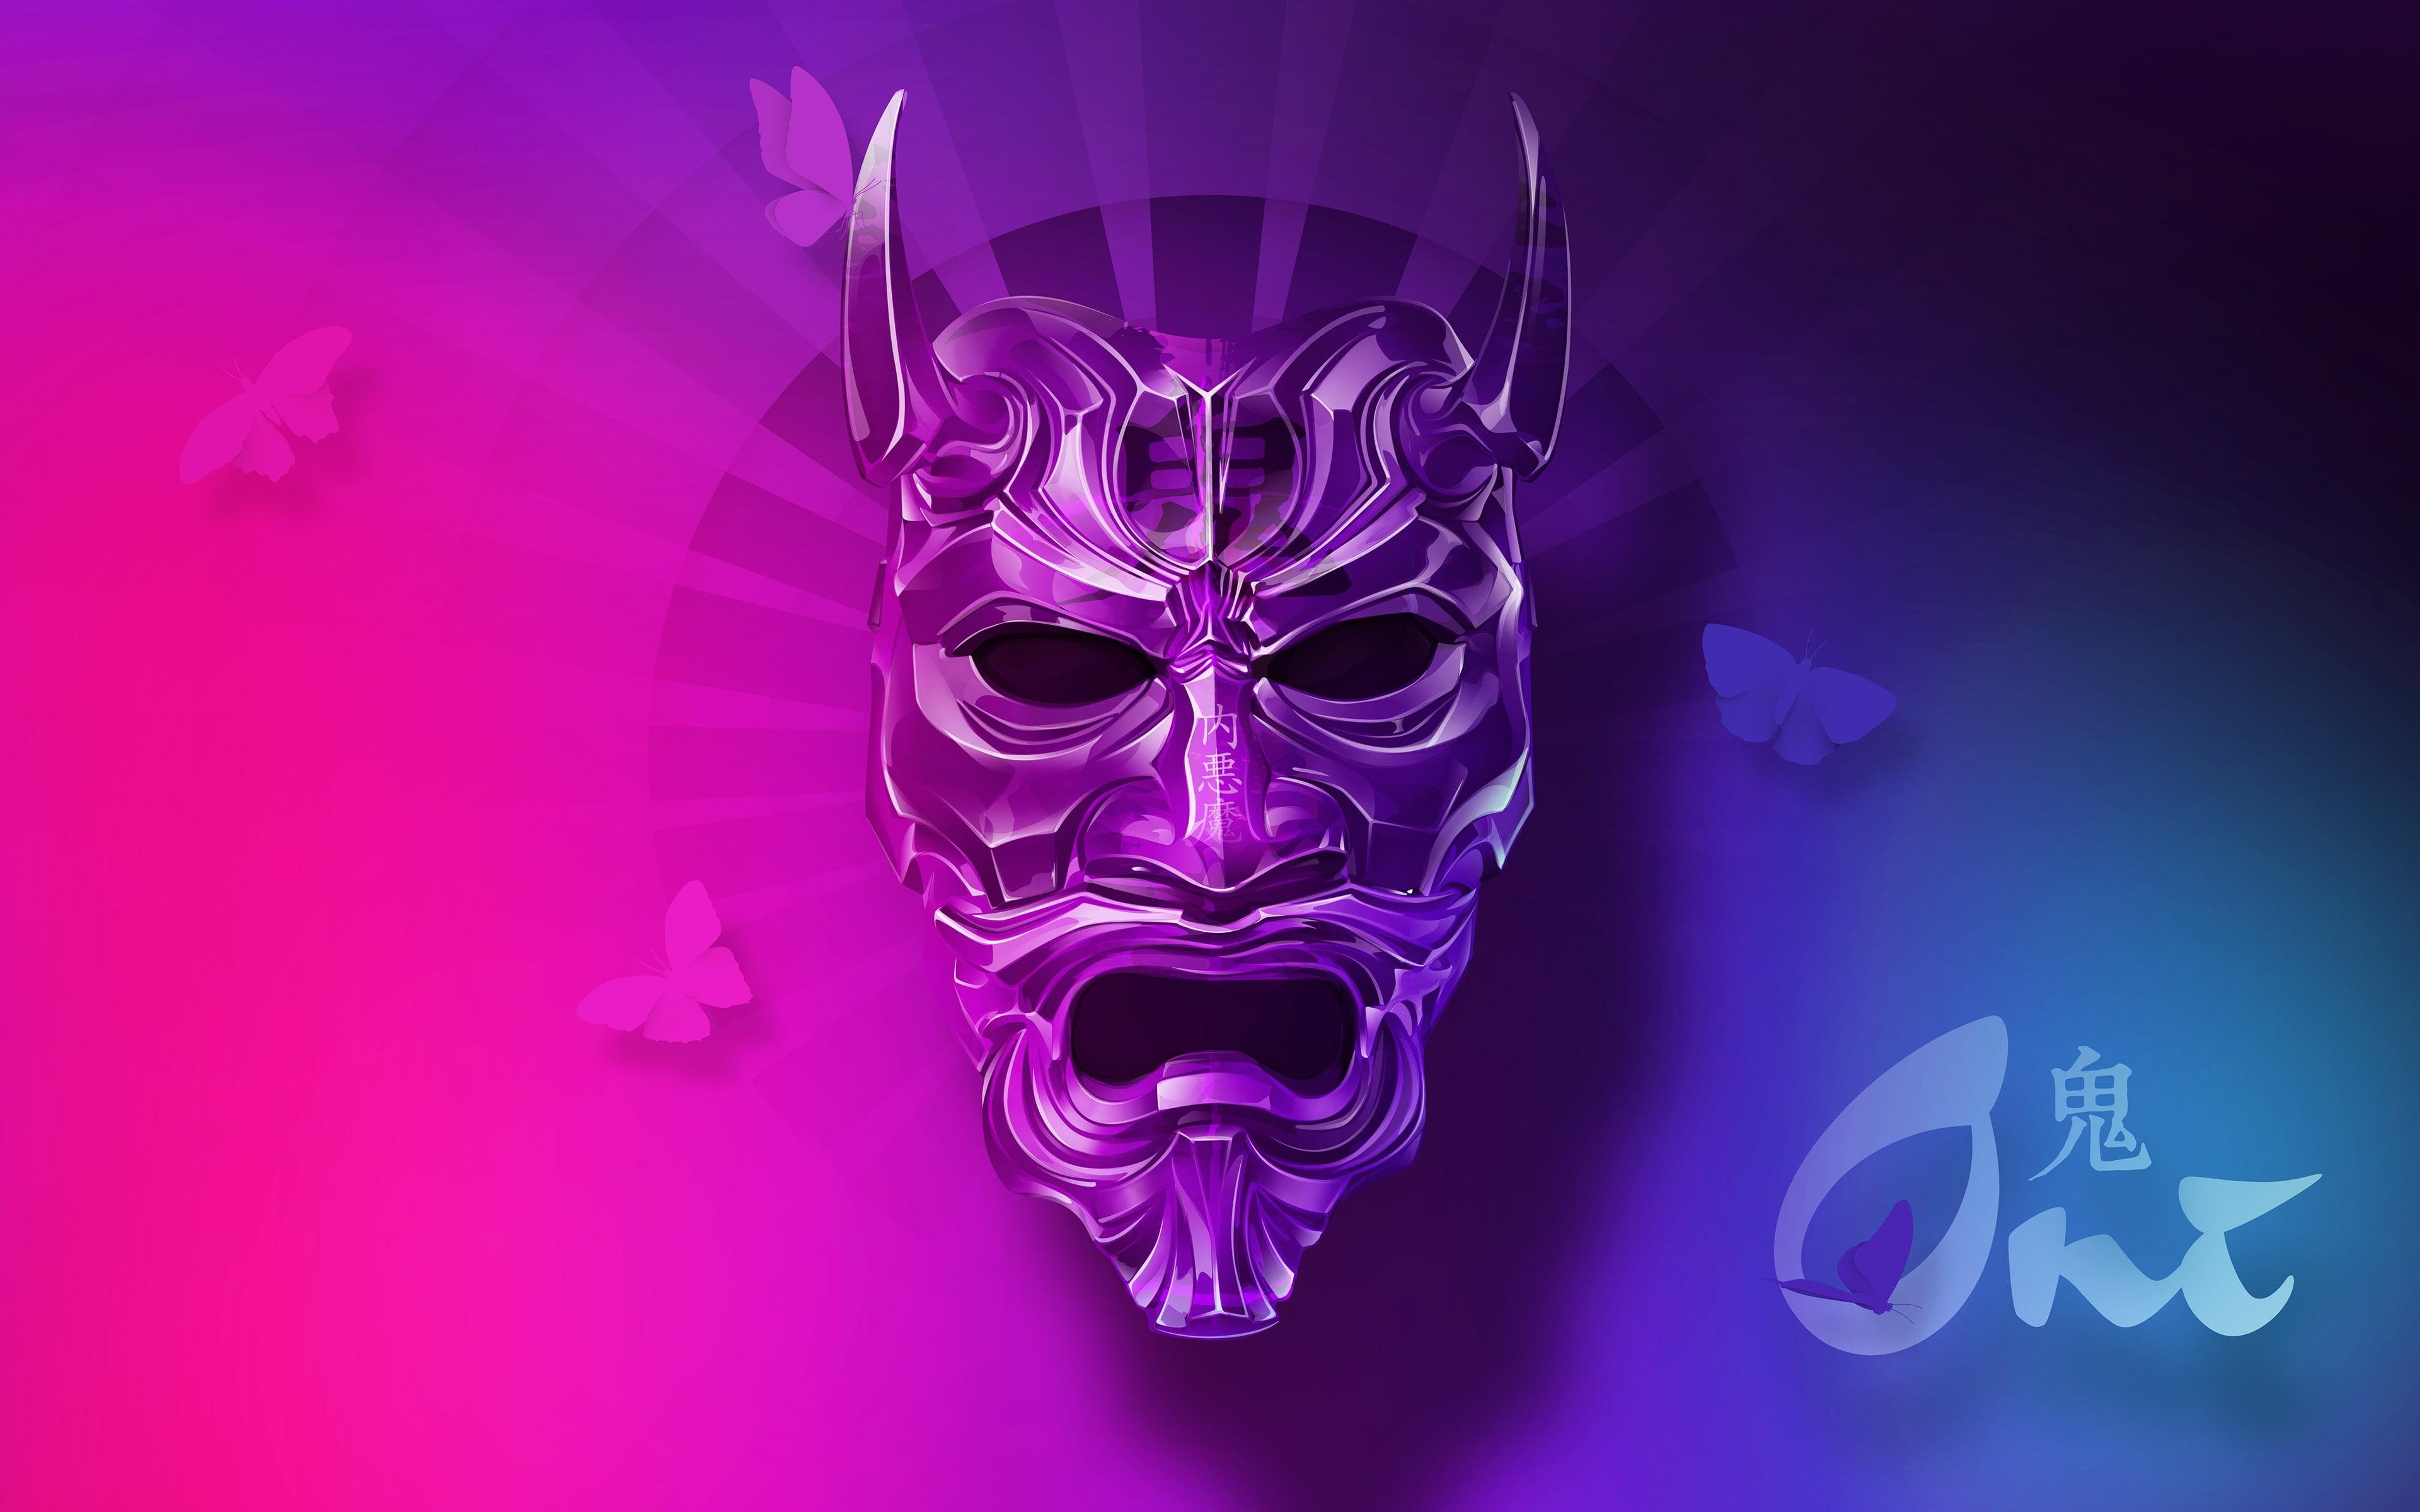 Purple Oni Mask Wallpaper and Free